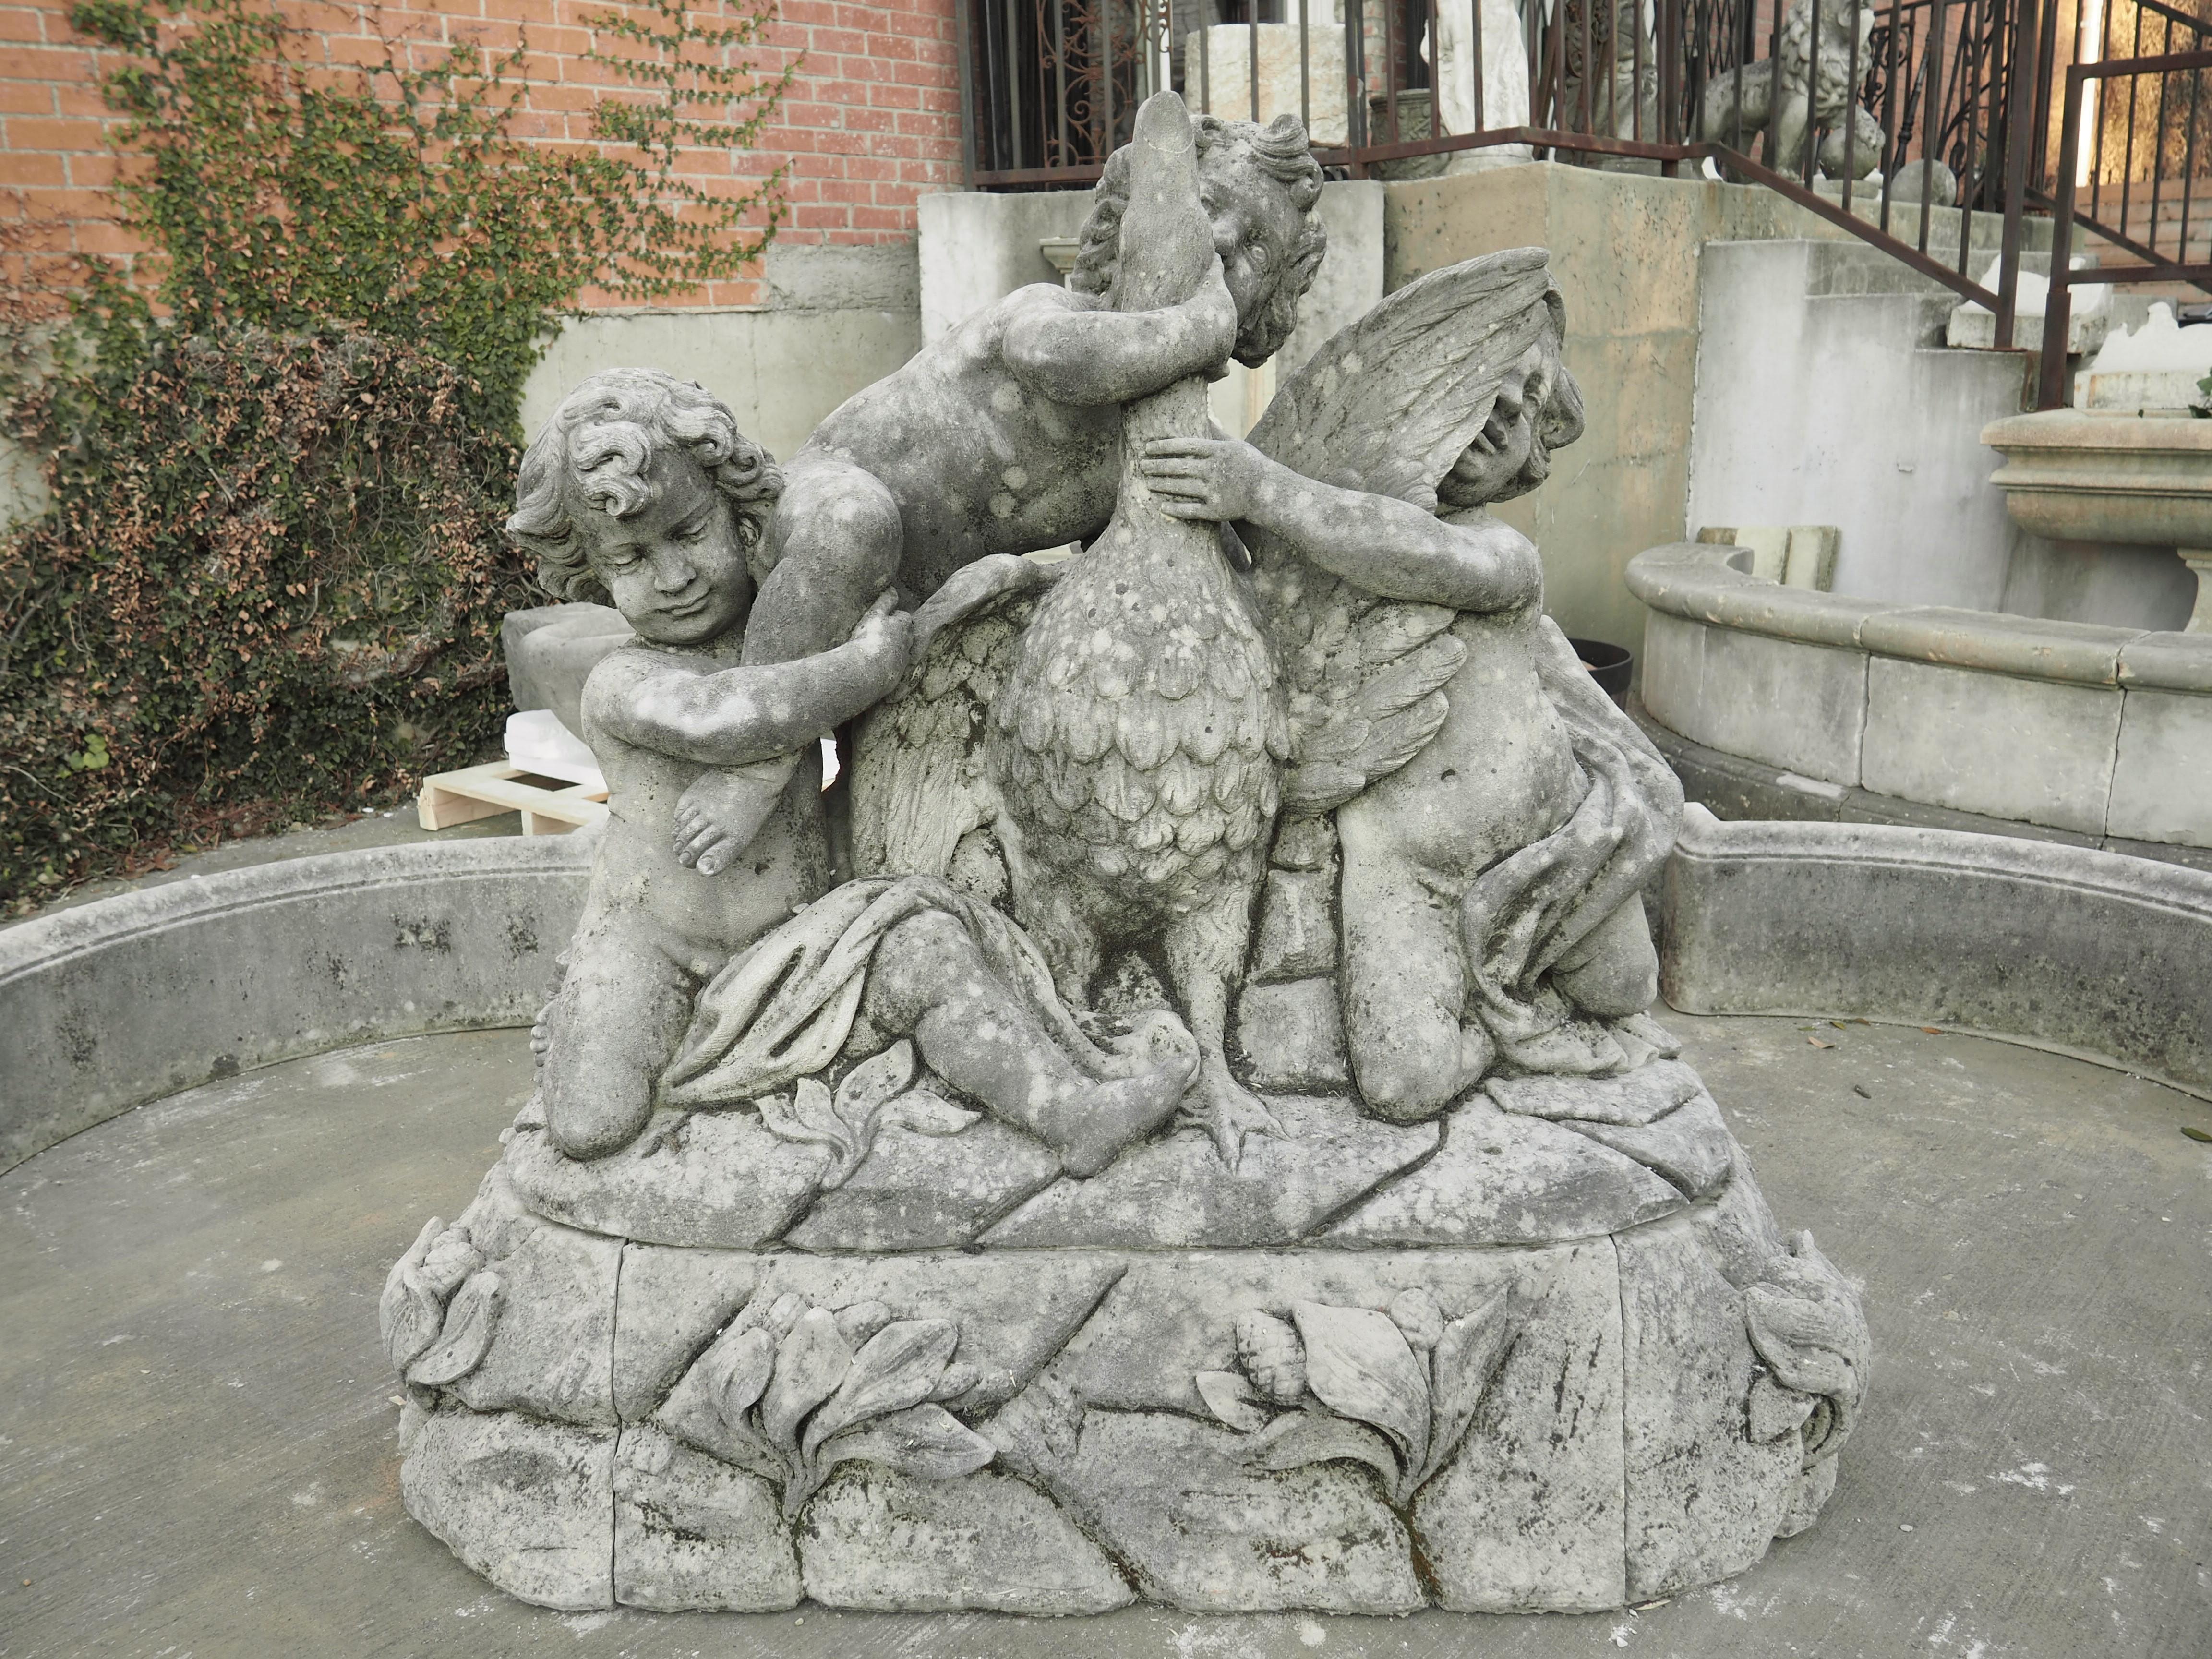 Cette grande fontaine centrale en pierre calcaire italienne comporte un grand élément central représentant trois putti jouant avec une oie. Ces putti sont représentés comme des enfants espiègles, luttant avec l'oiseau au grand plumage au sommet d'un